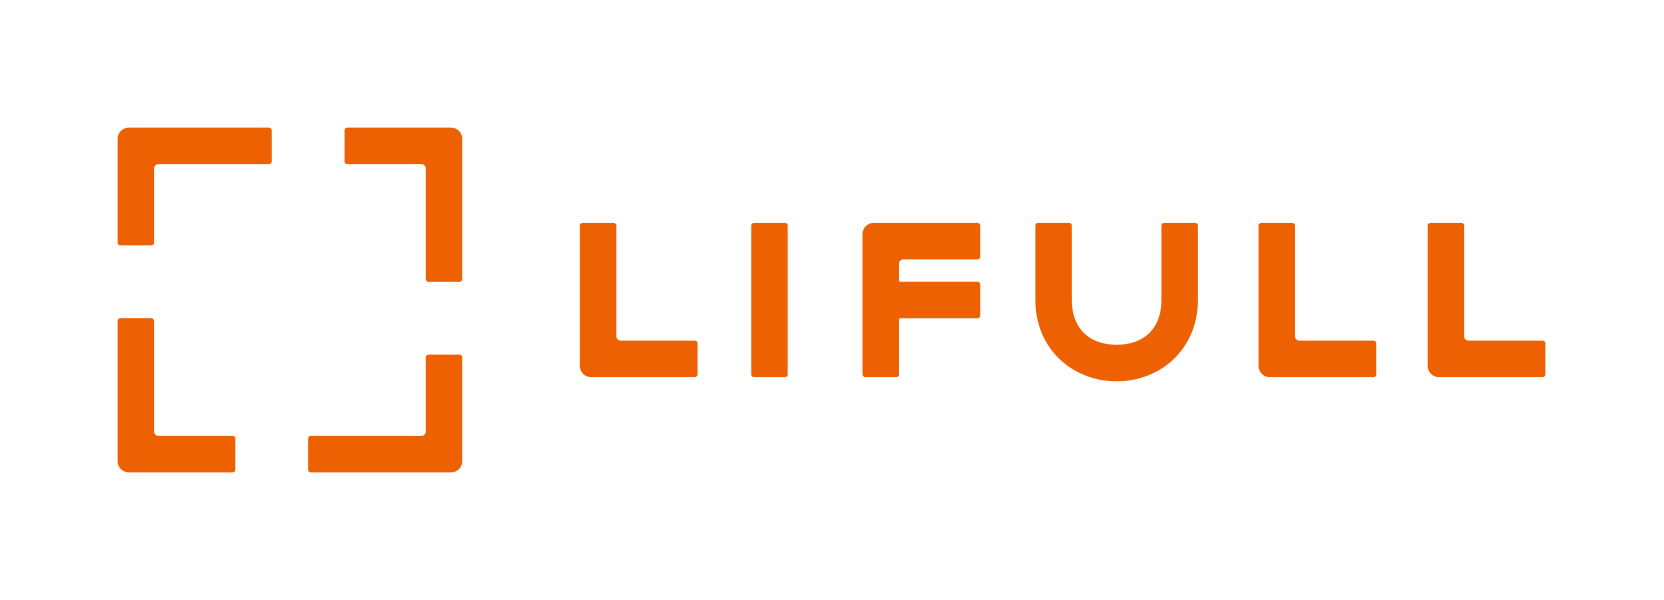 LIFULL Co., Ltd.